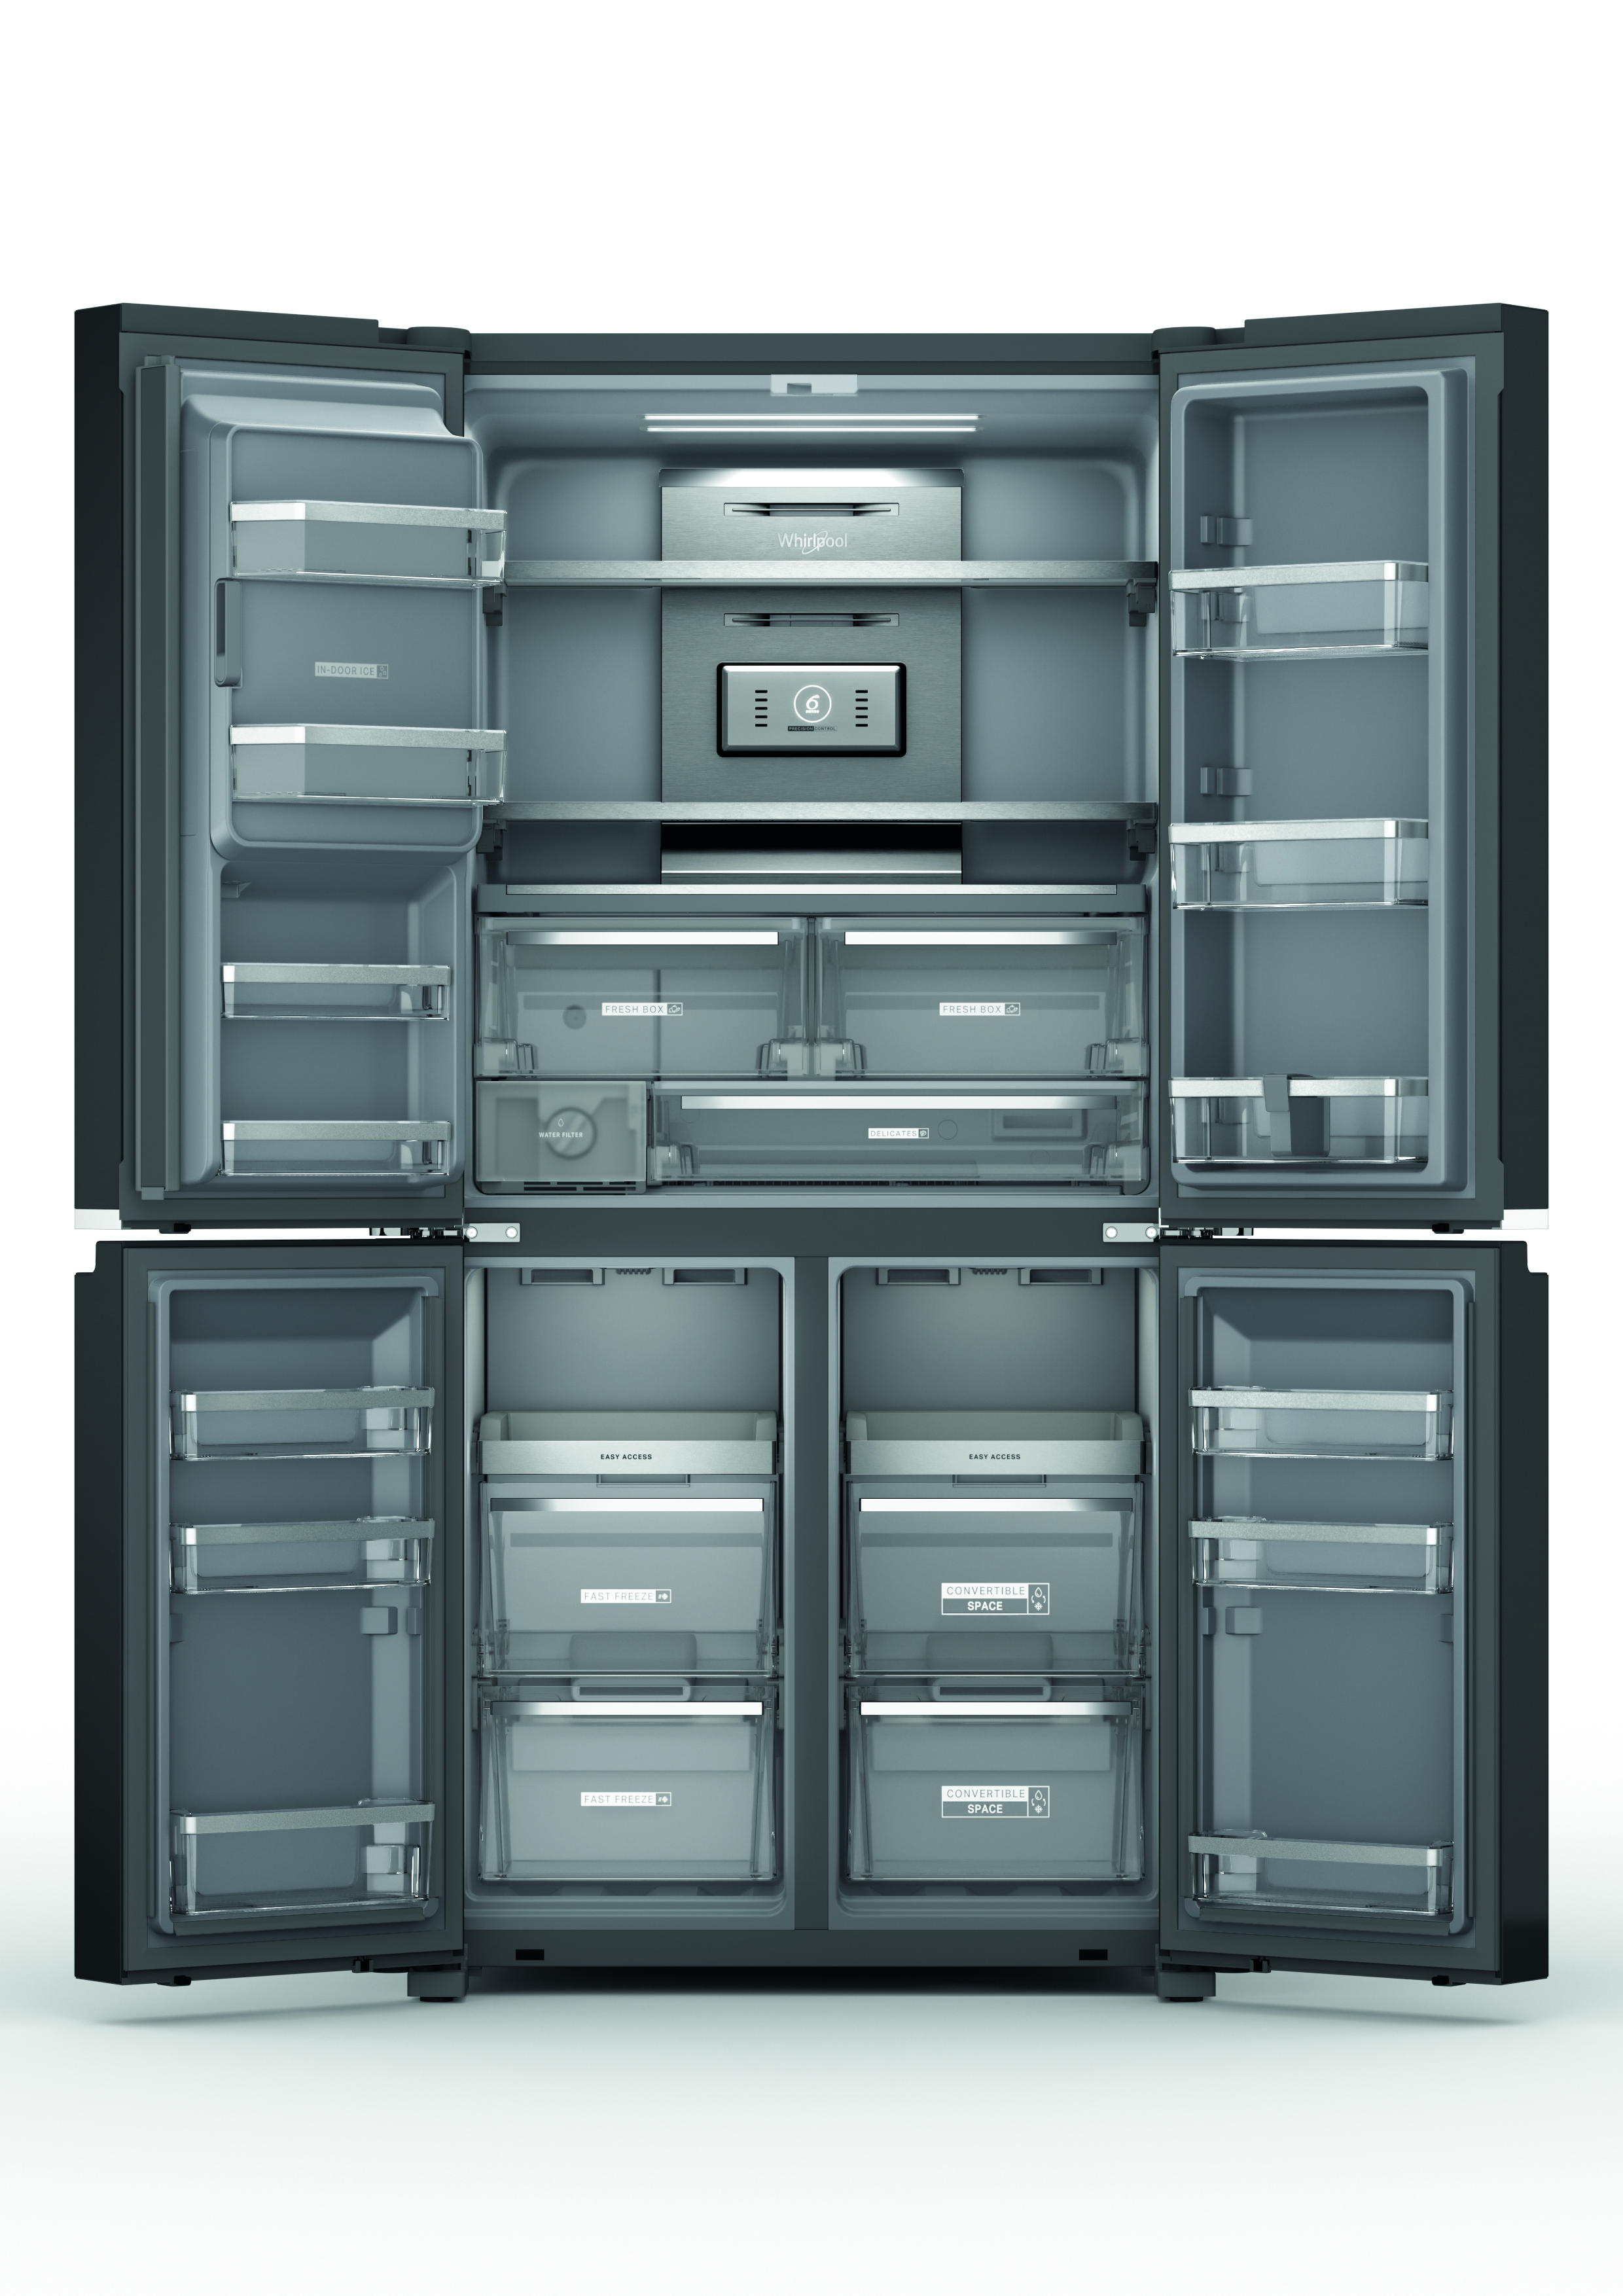 Une machine à glaçons sur un frigo : quelle fraîcheur ! - Blog BUT